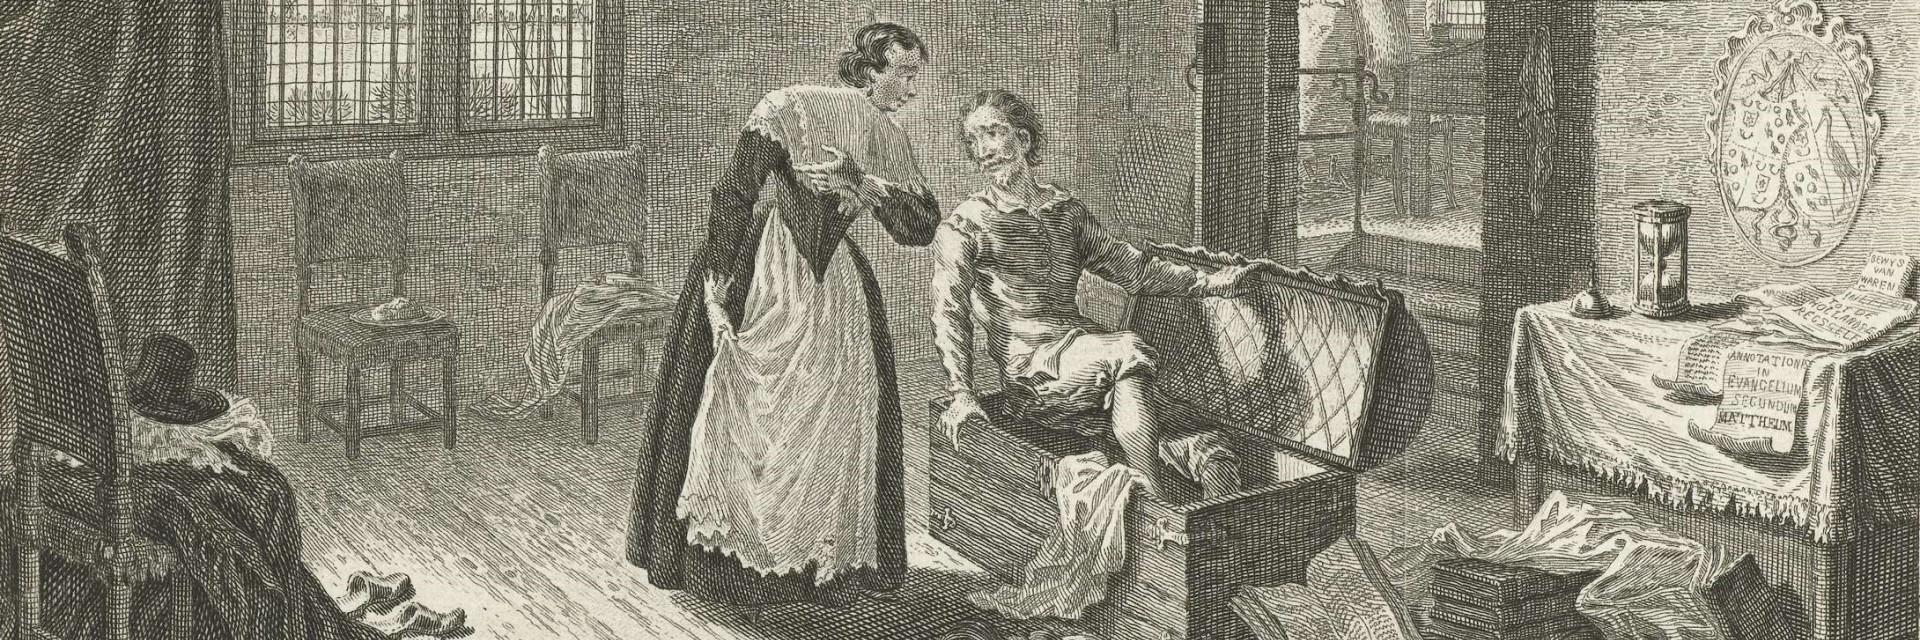 Hugo de Groot, boekenkist, vrouw, gravure